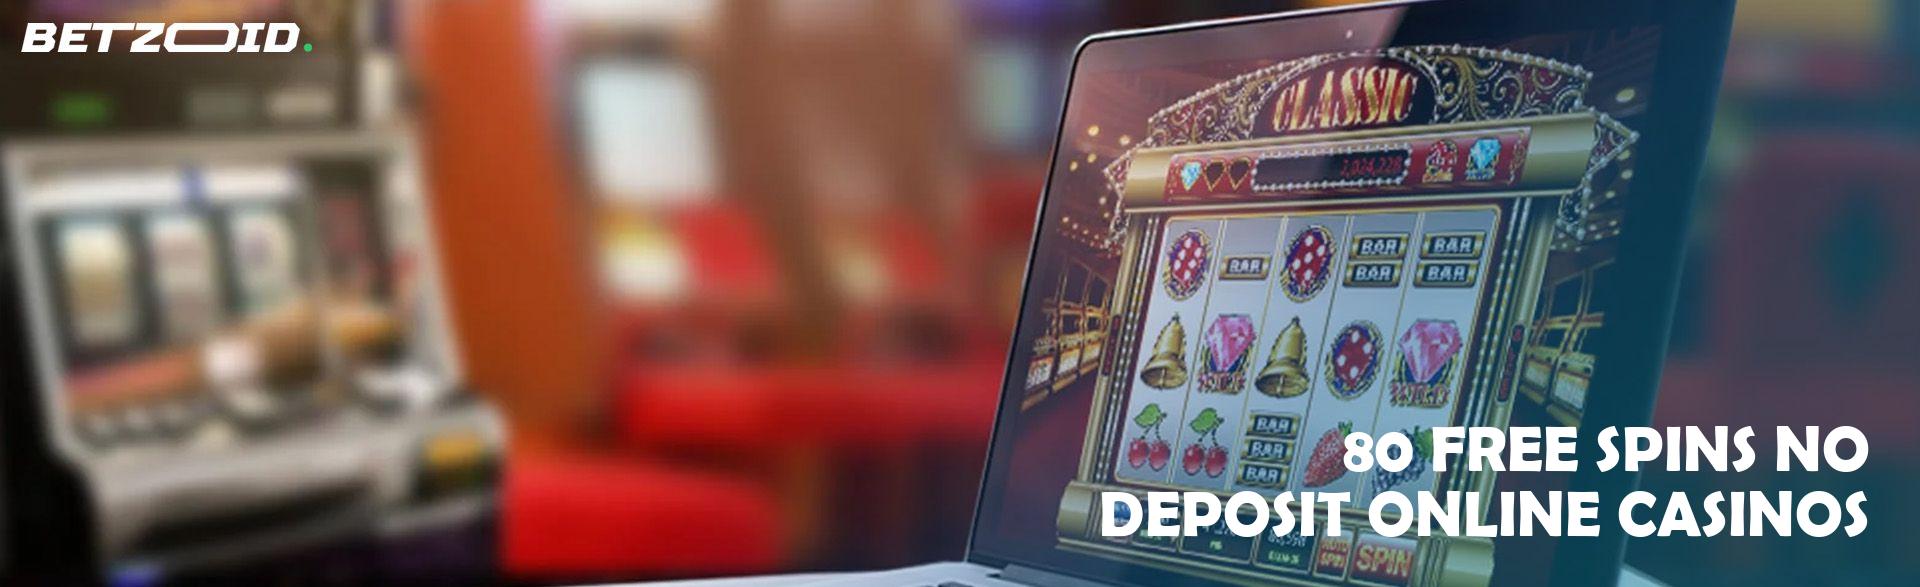 80 Free Spins No Deposit Online Casinos.